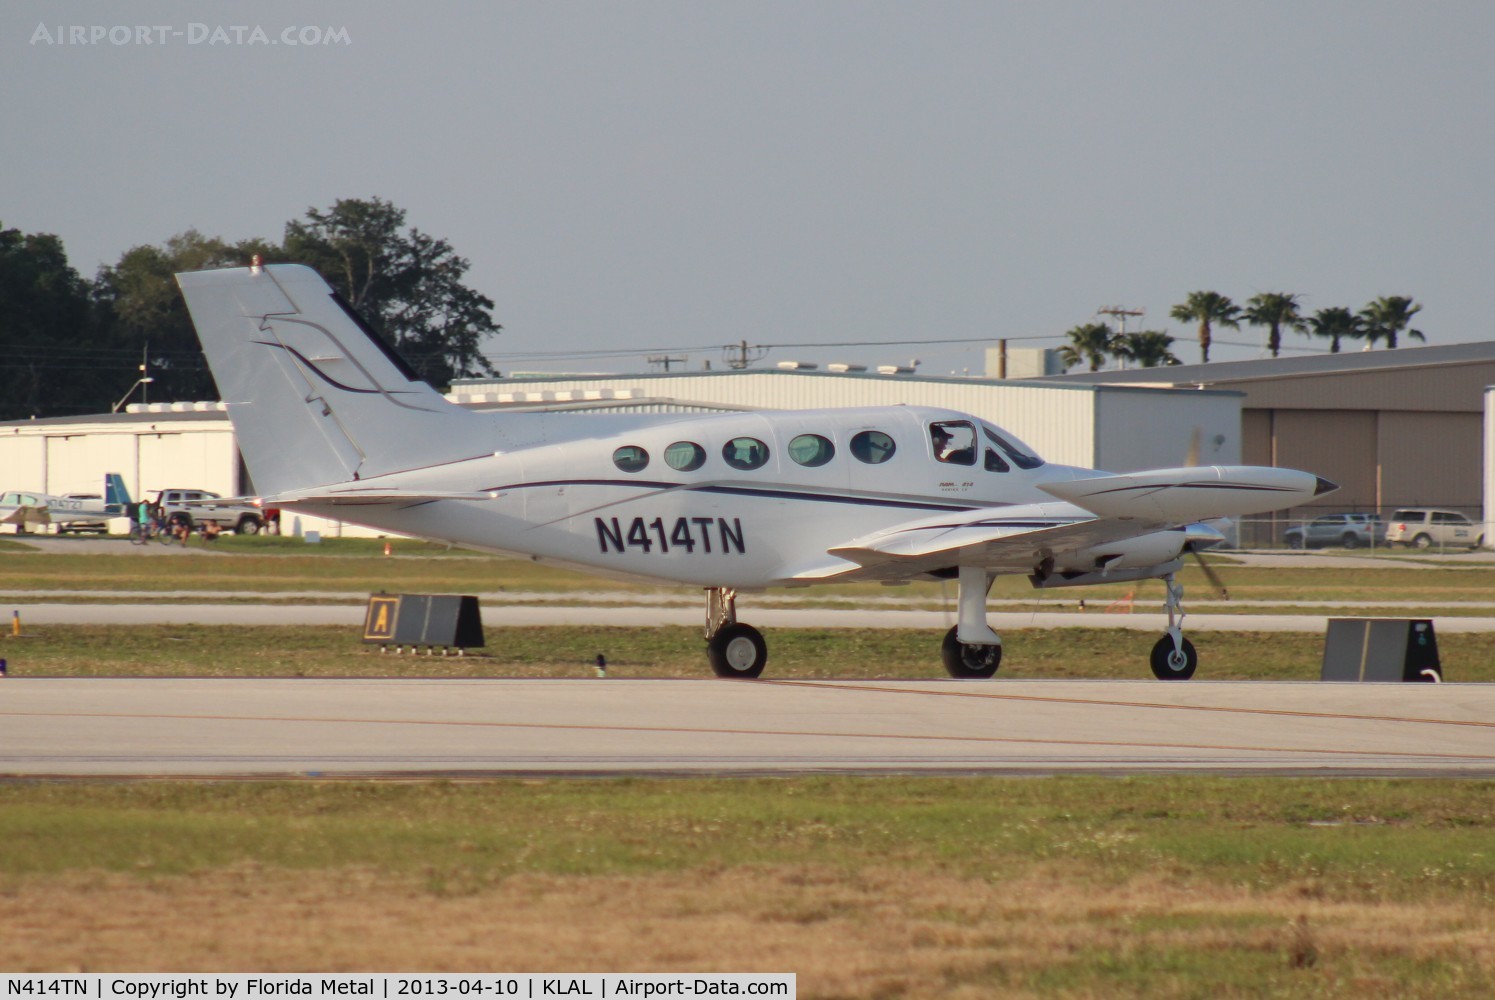 N414TN, 1974 Cessna 414 Chancellor C/N 414-0491, C414 zx